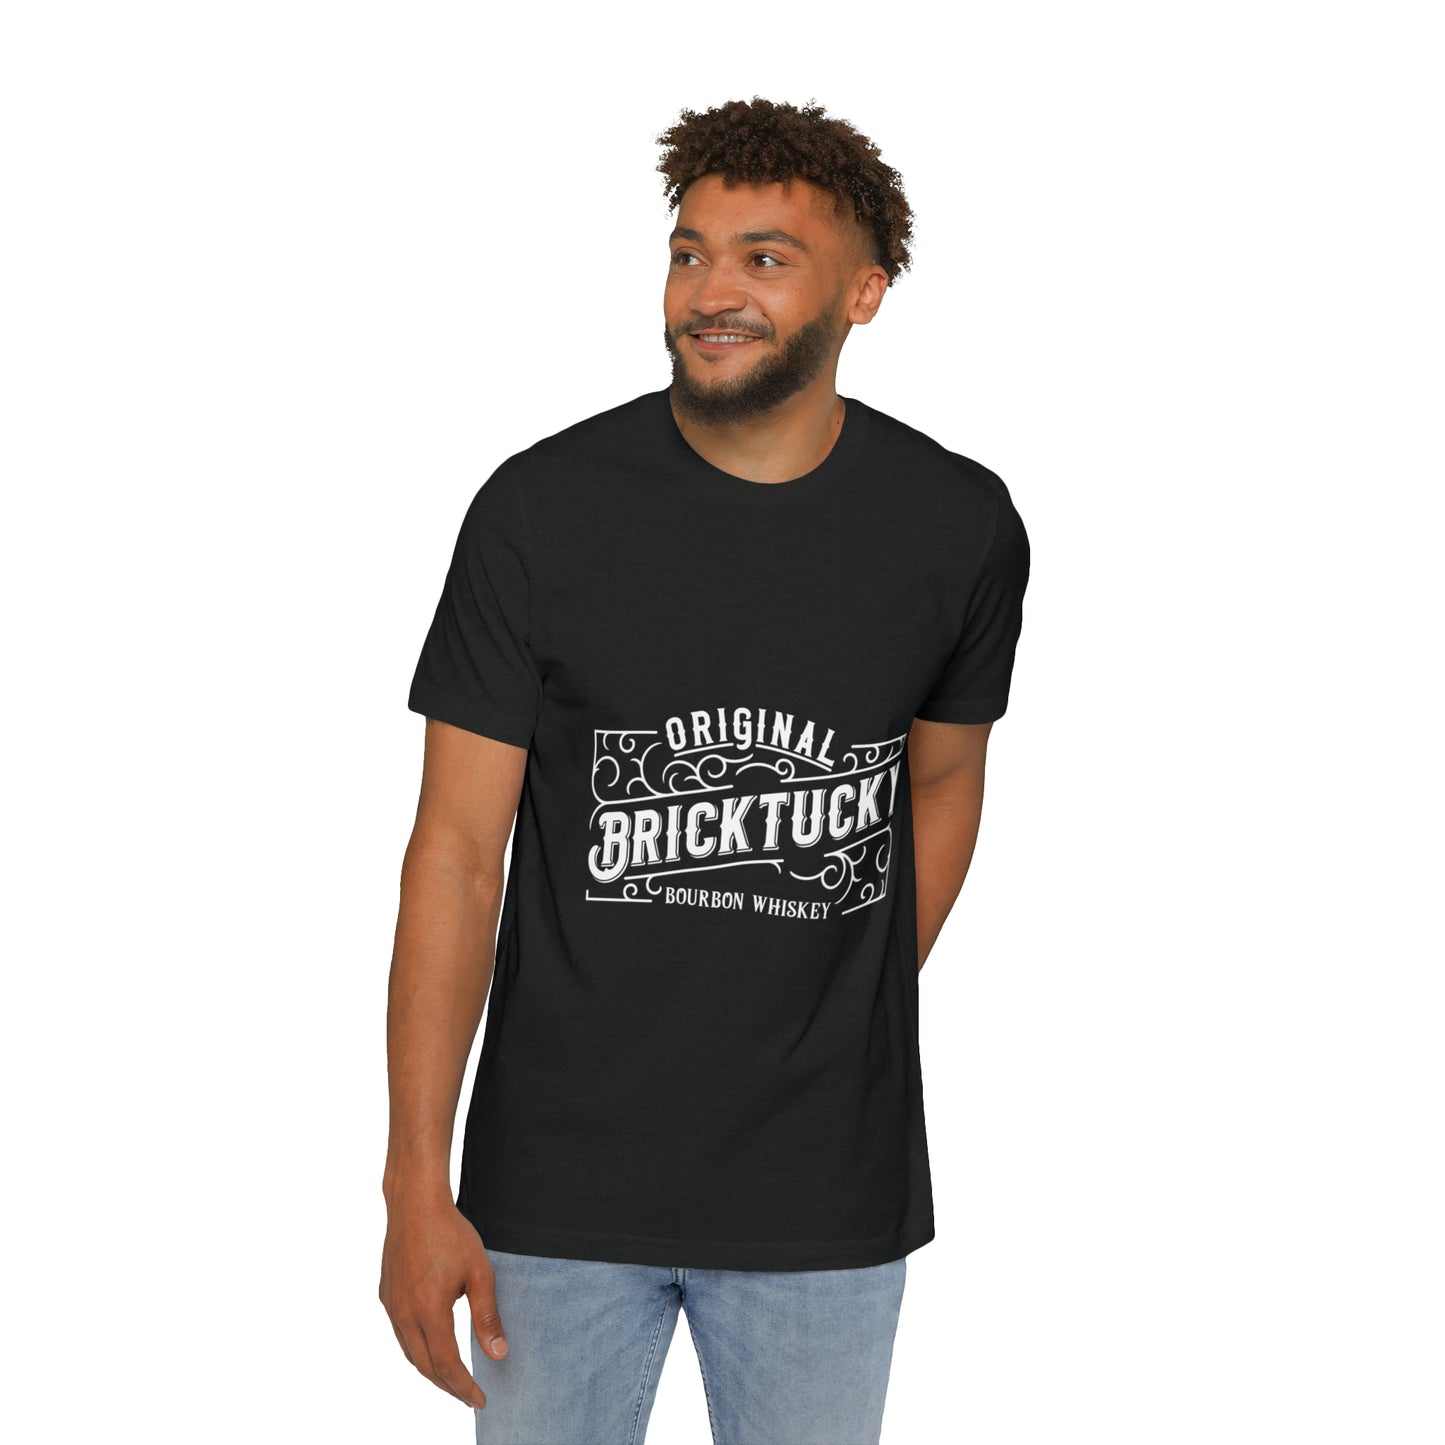 Bricktucky Bourbon Unisex Short-Sleeve Jersey T-Shirt Made in the USA